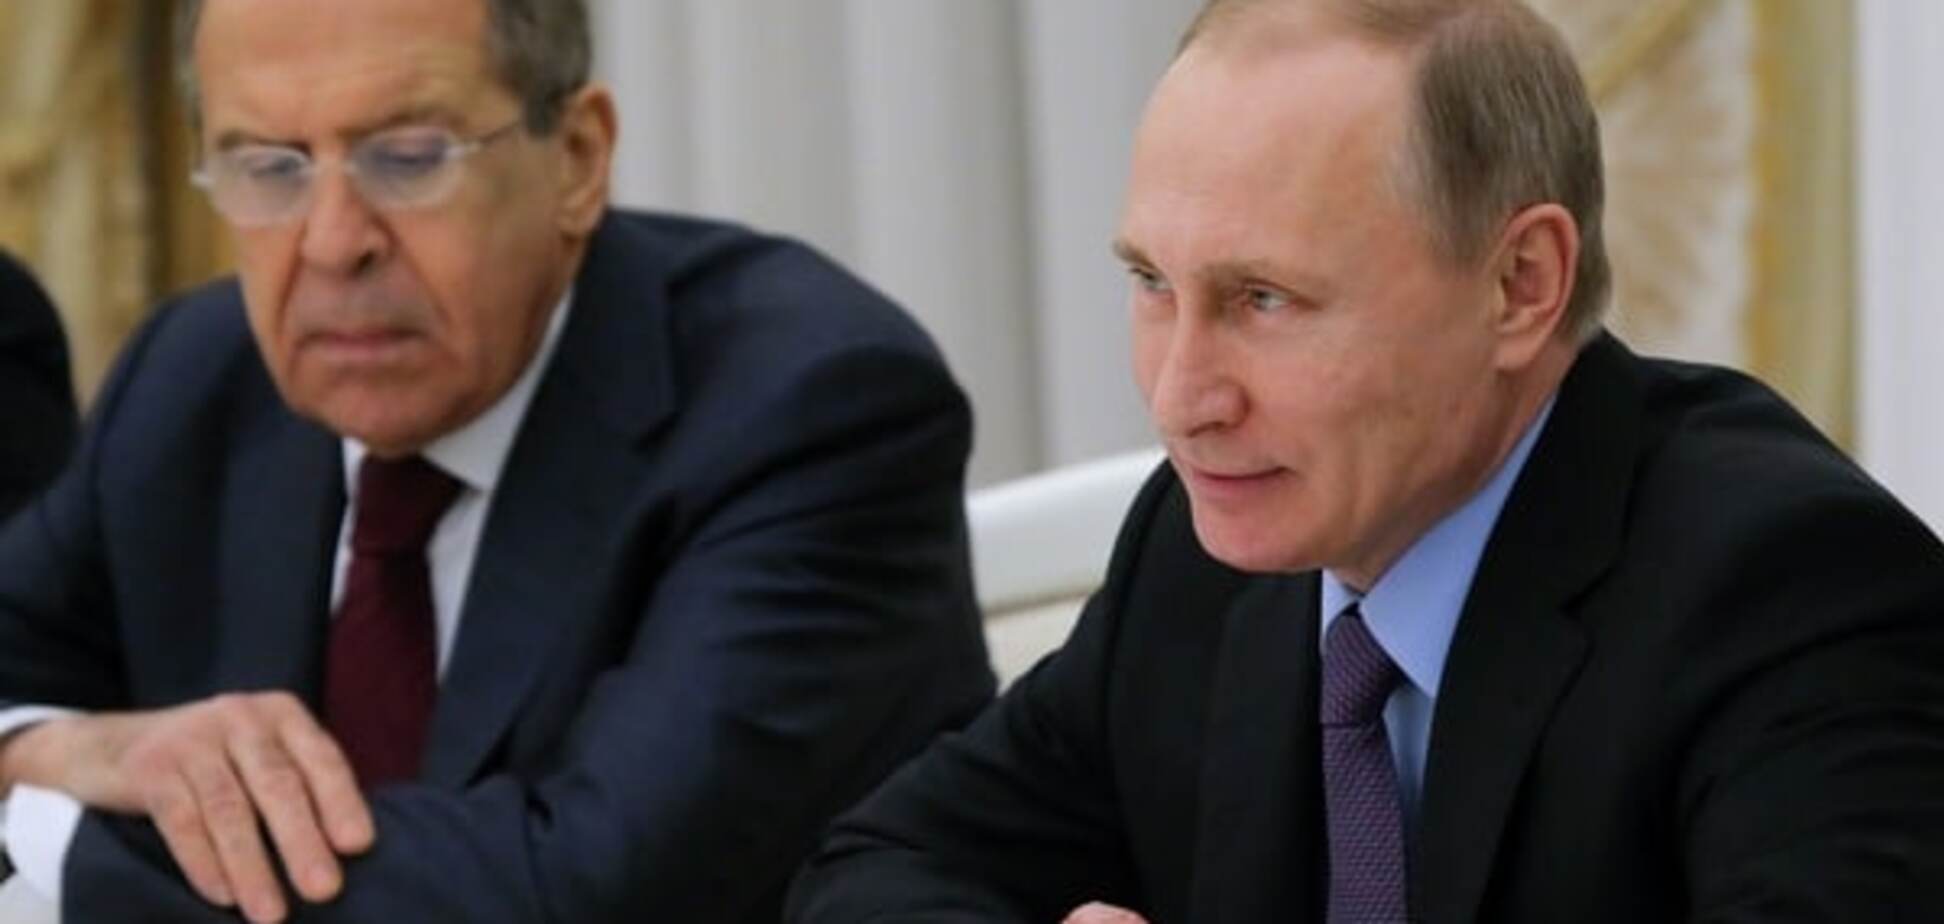 Плохие показатели: оппозиционер объяснил, почему Путин нервничает перед выборами